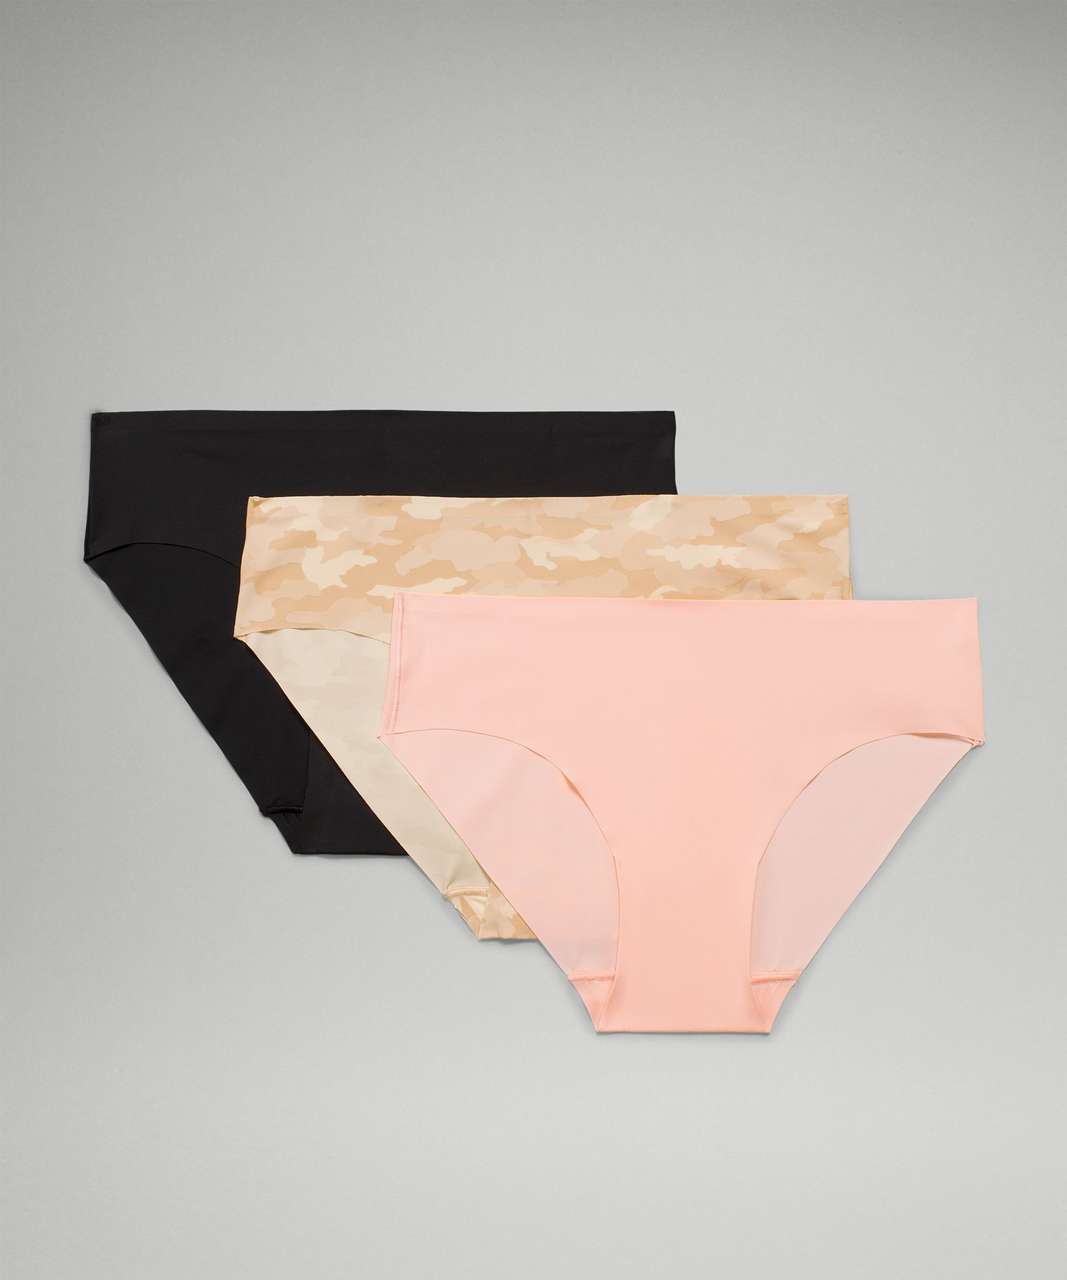 Lululemon InvisiWear Mid Rise Bikini Underwear 3 Pack - Heritage 365 Camo Mini Rotated Pecan Tan Multi / Pink Mist / Black